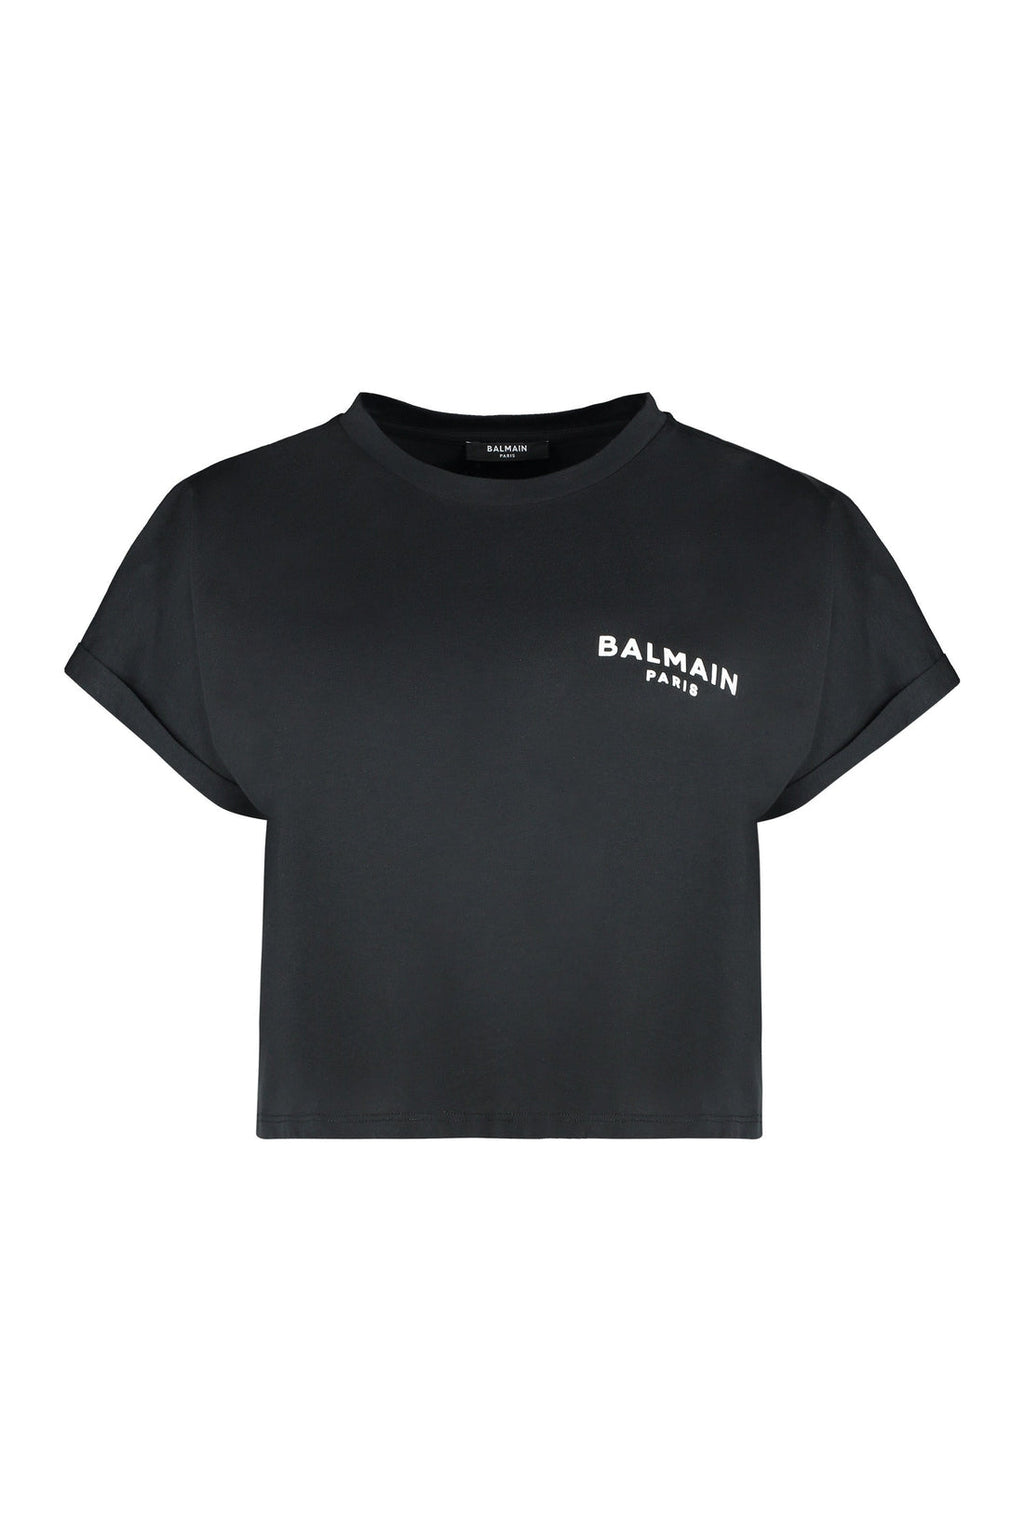 Balmain-OUTLET-SALE-Cotton crew-neck T-shirt-ARCHIVIST